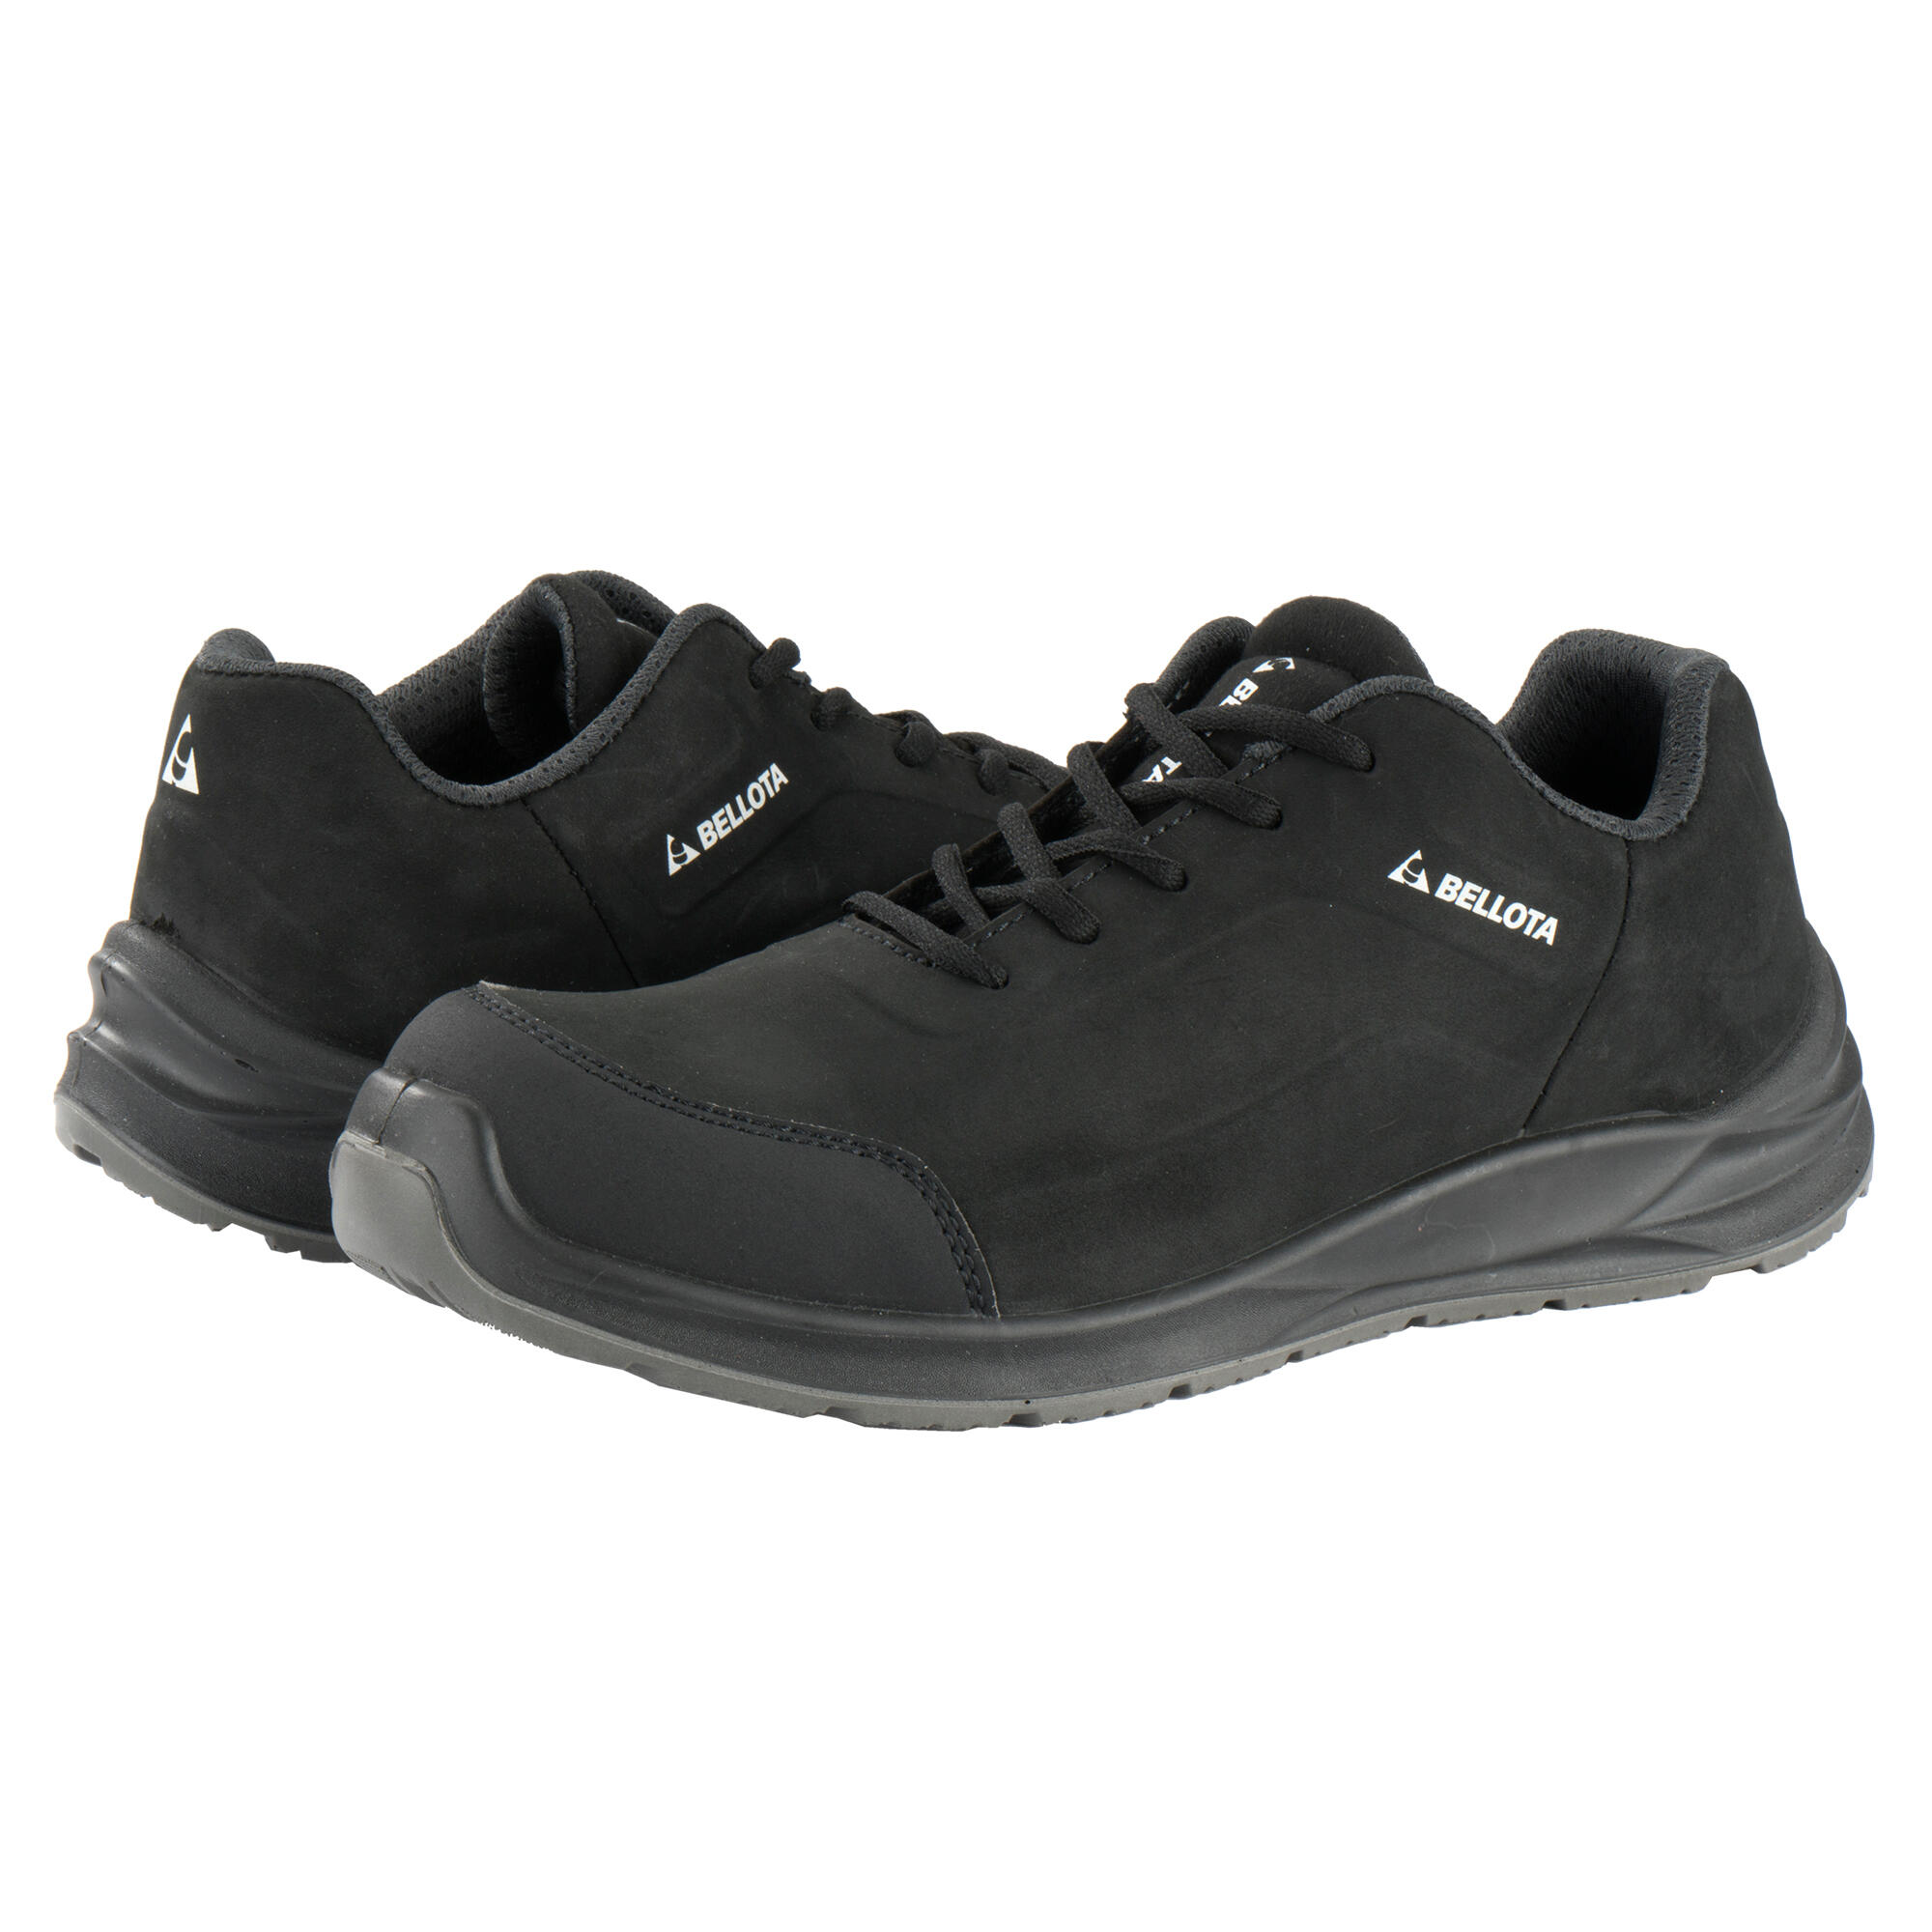 Zapatos seguridad s3 bellota flex carbón negro t40